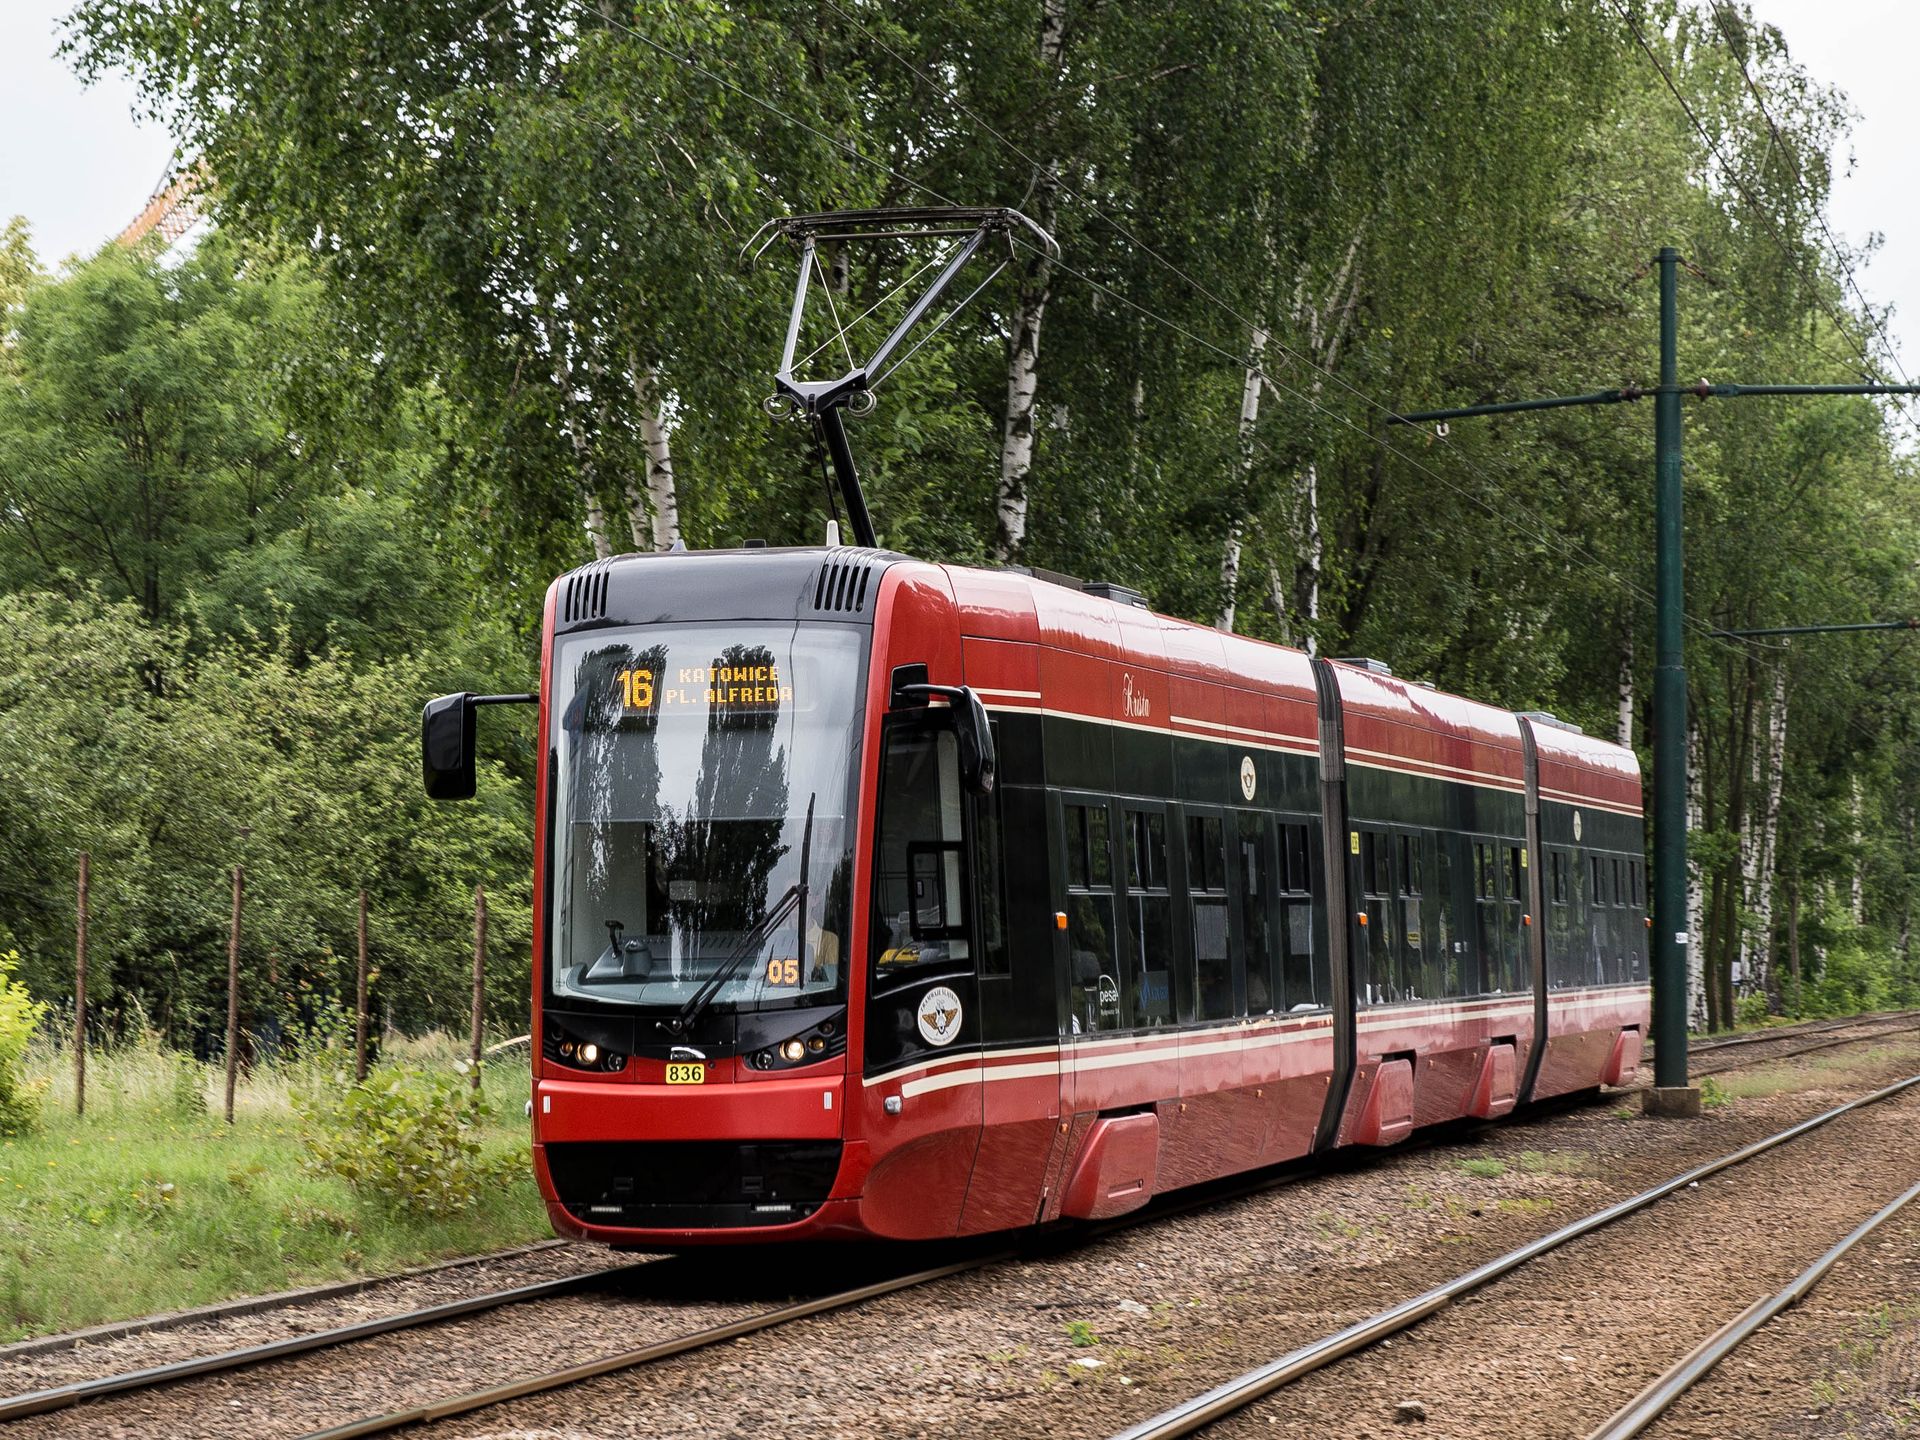 Jest decyzja GDOŚ umożliwiająca budowę nowej trasy tramwajowej na południe Katowic 